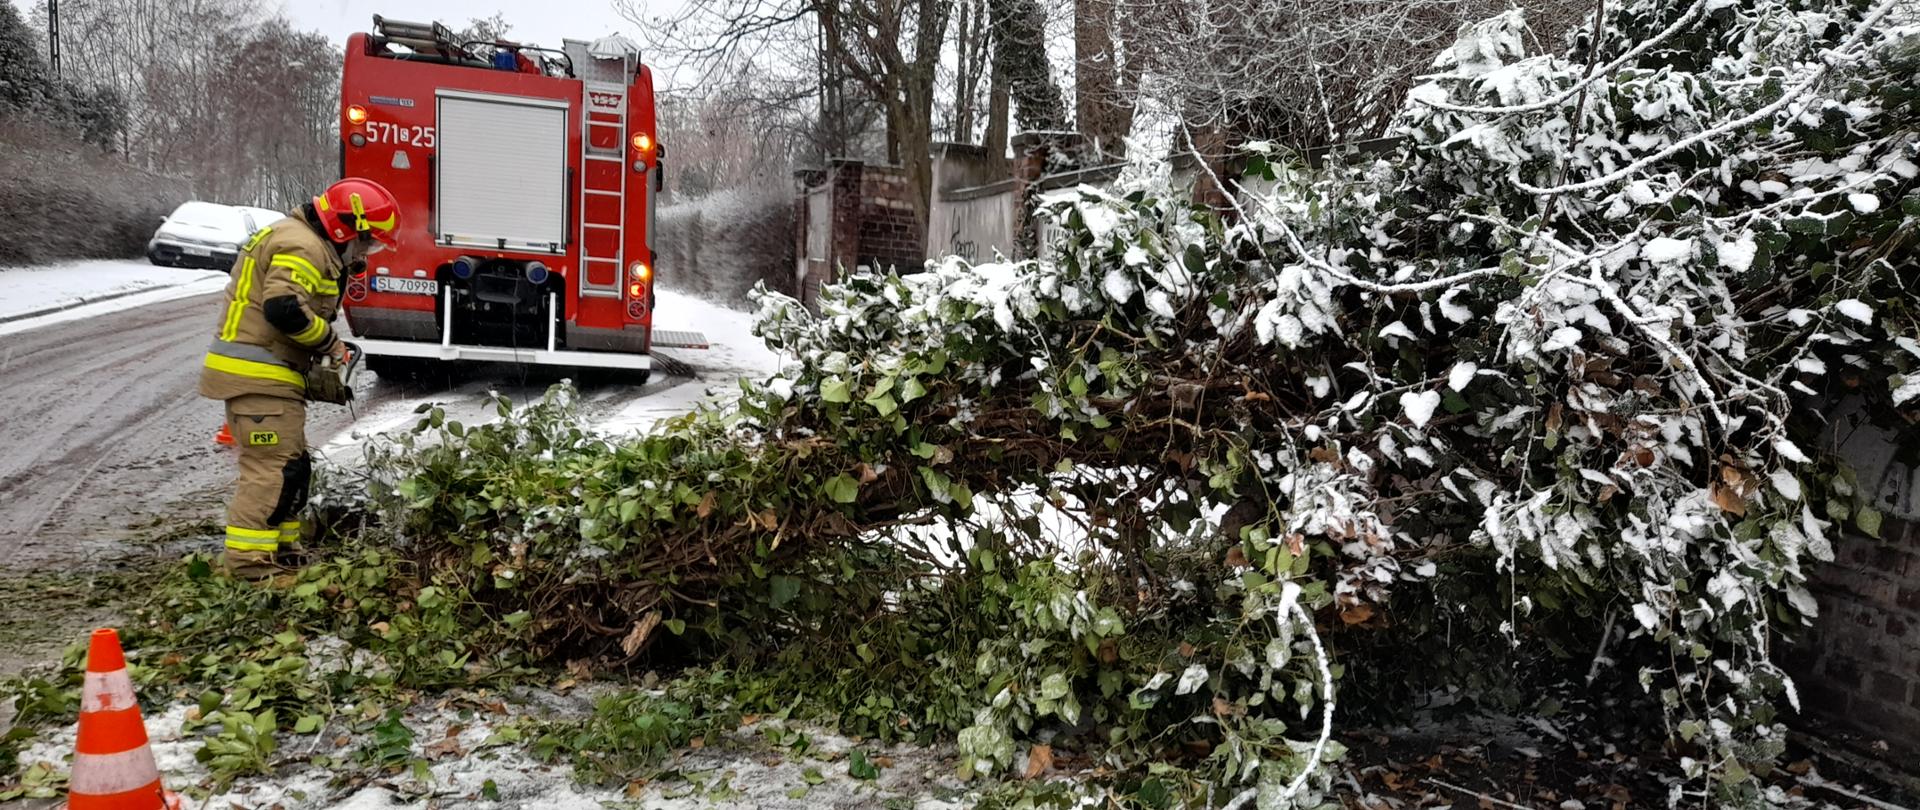 Na zdjęciu znajduje się strażak z pilarką spalinową w trakcie usuwania powalonego drzewa, w tle znajduje się ciężki samochód gaśniczy.